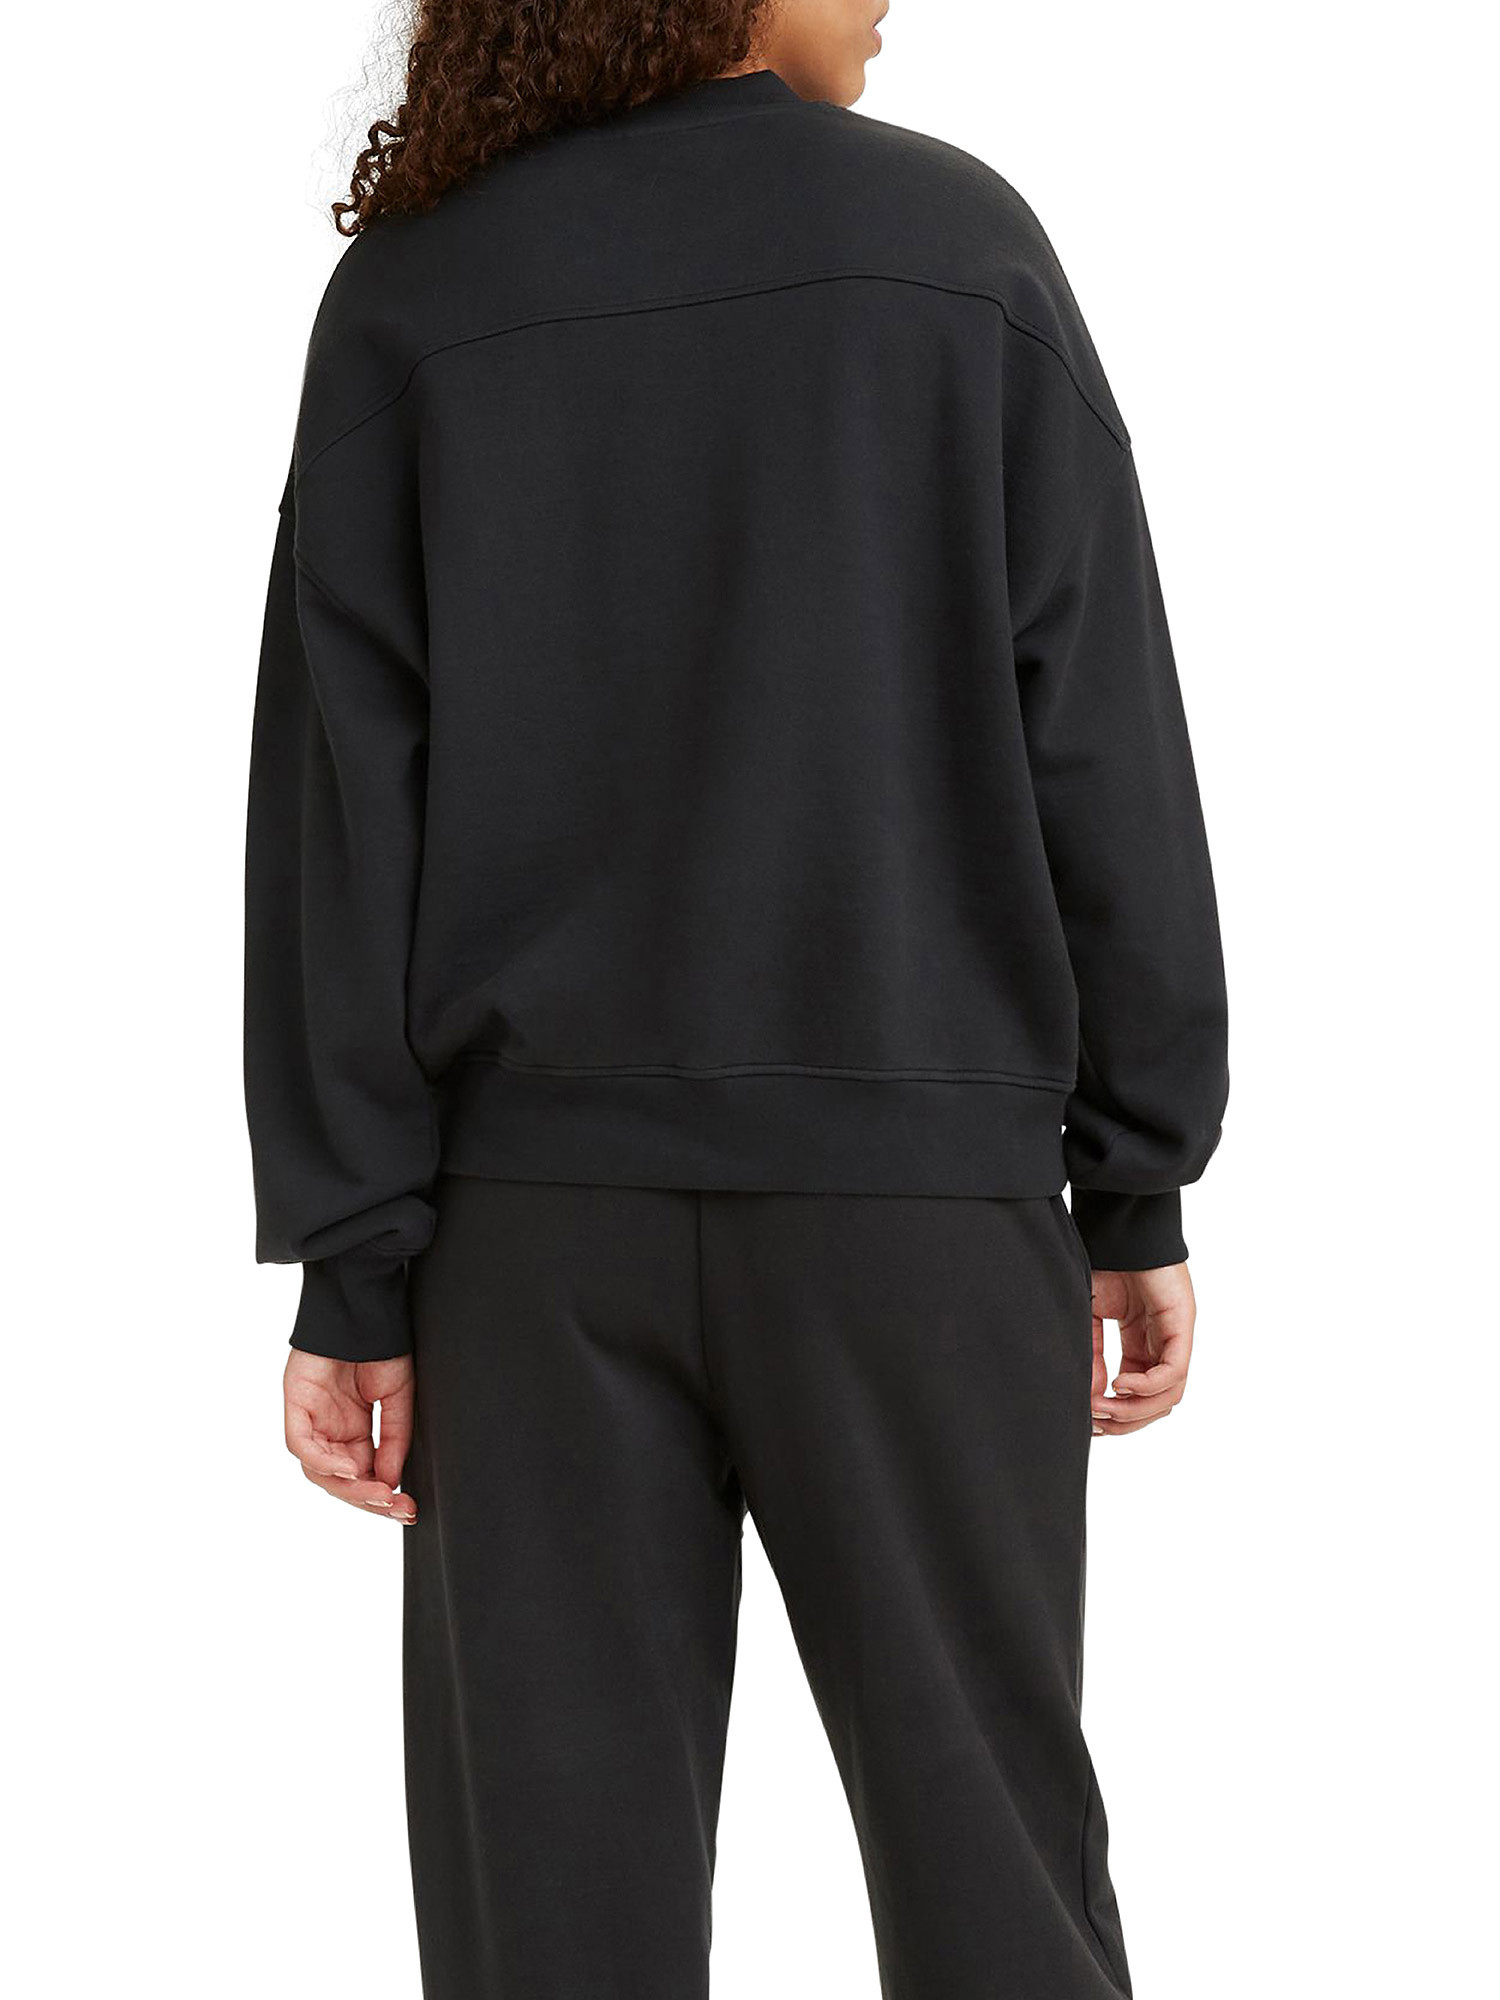 WFH Loungewear sweatshirt, Black, large image number 6